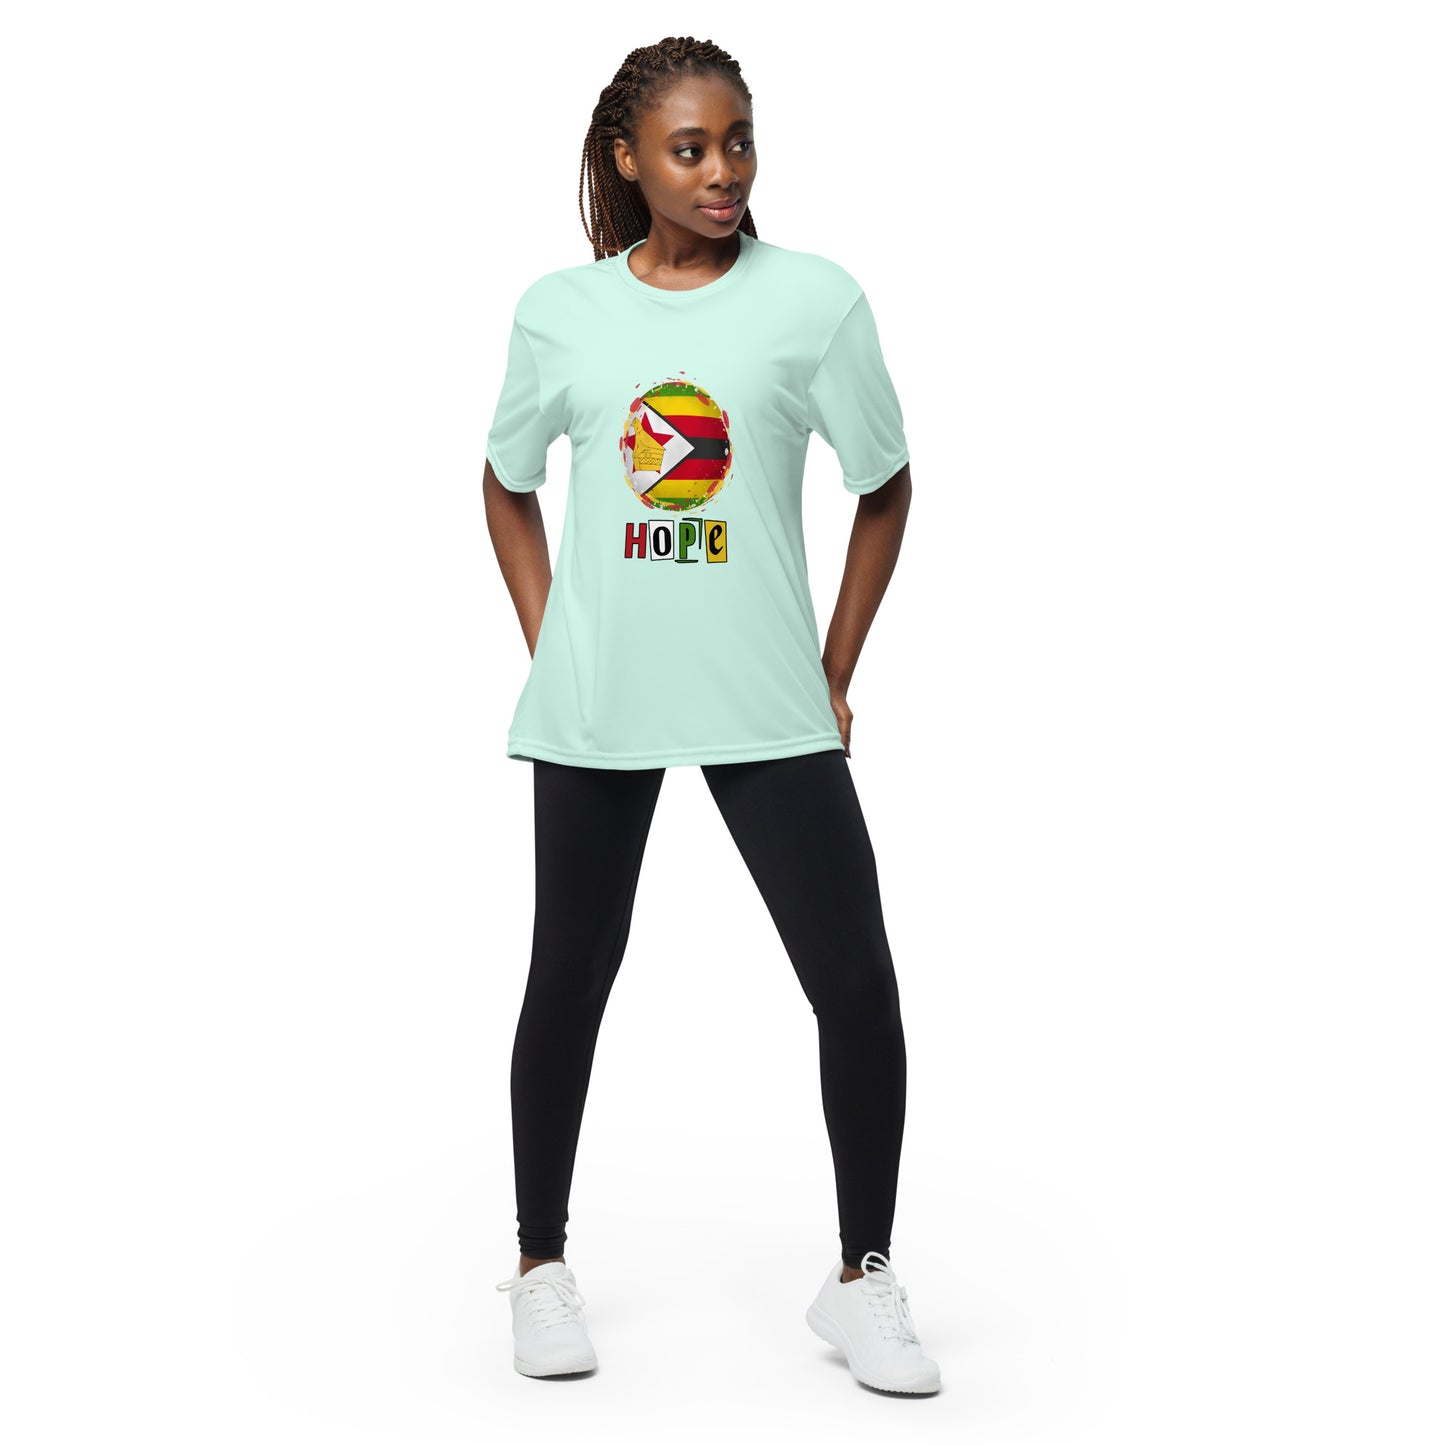 Unisex performance crew neck Zimbabwe Hope t-shirt